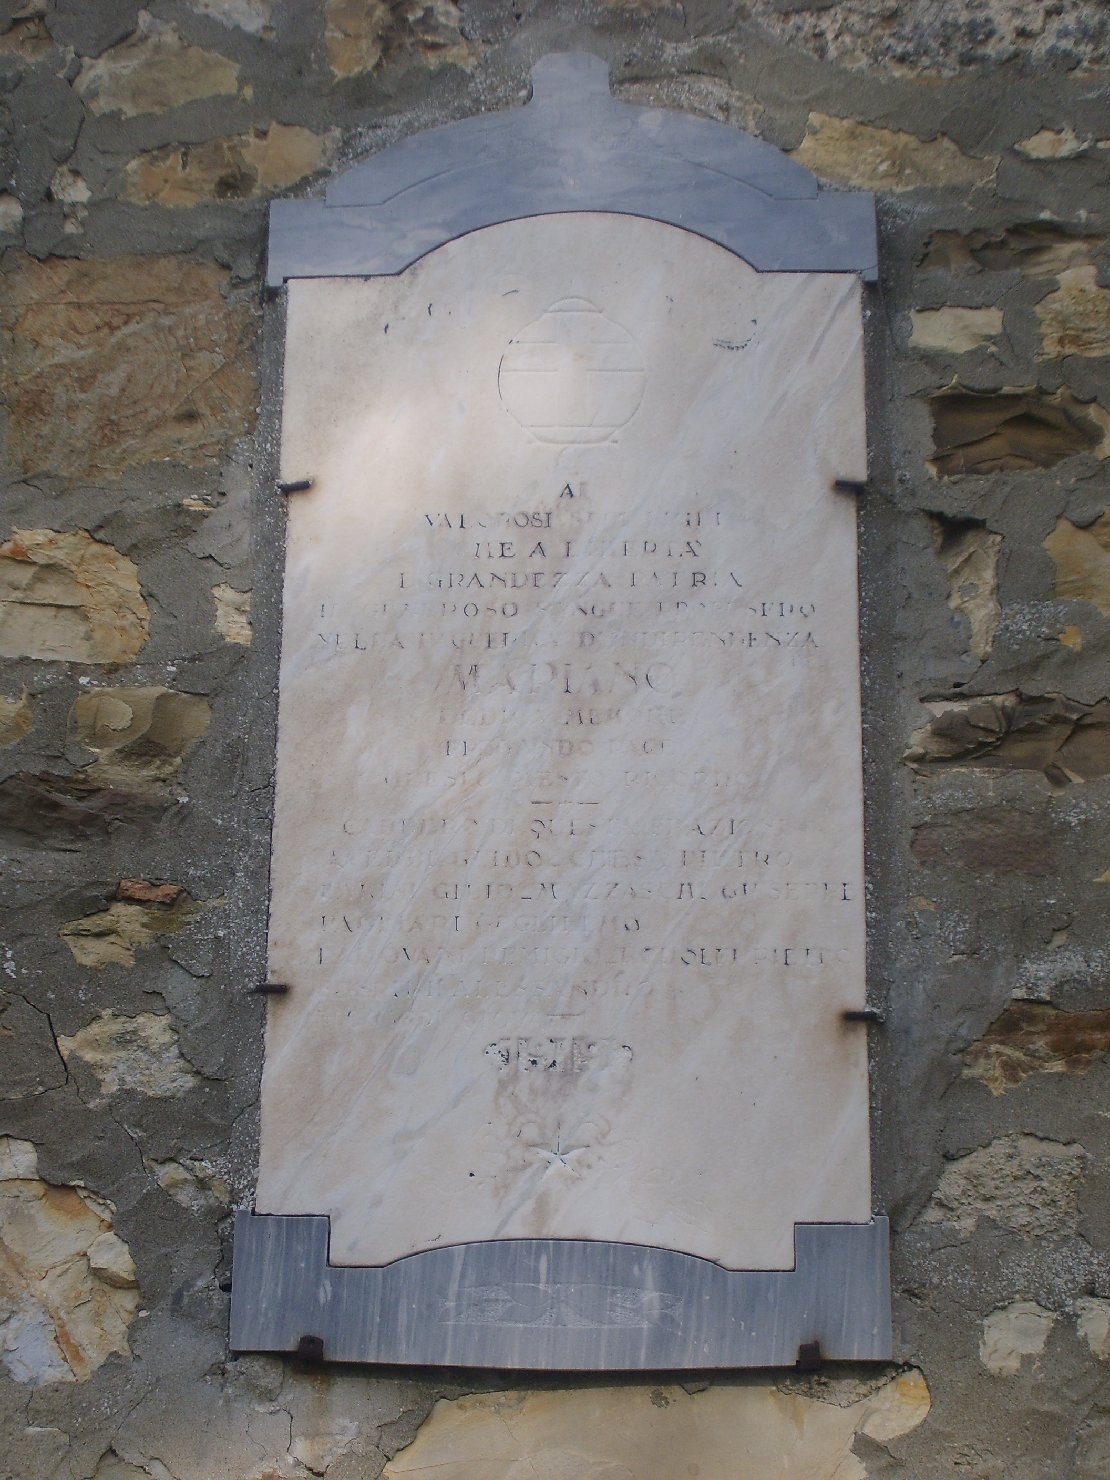 lapide commemorativa ai caduti - ambito parmense (sec. XX)